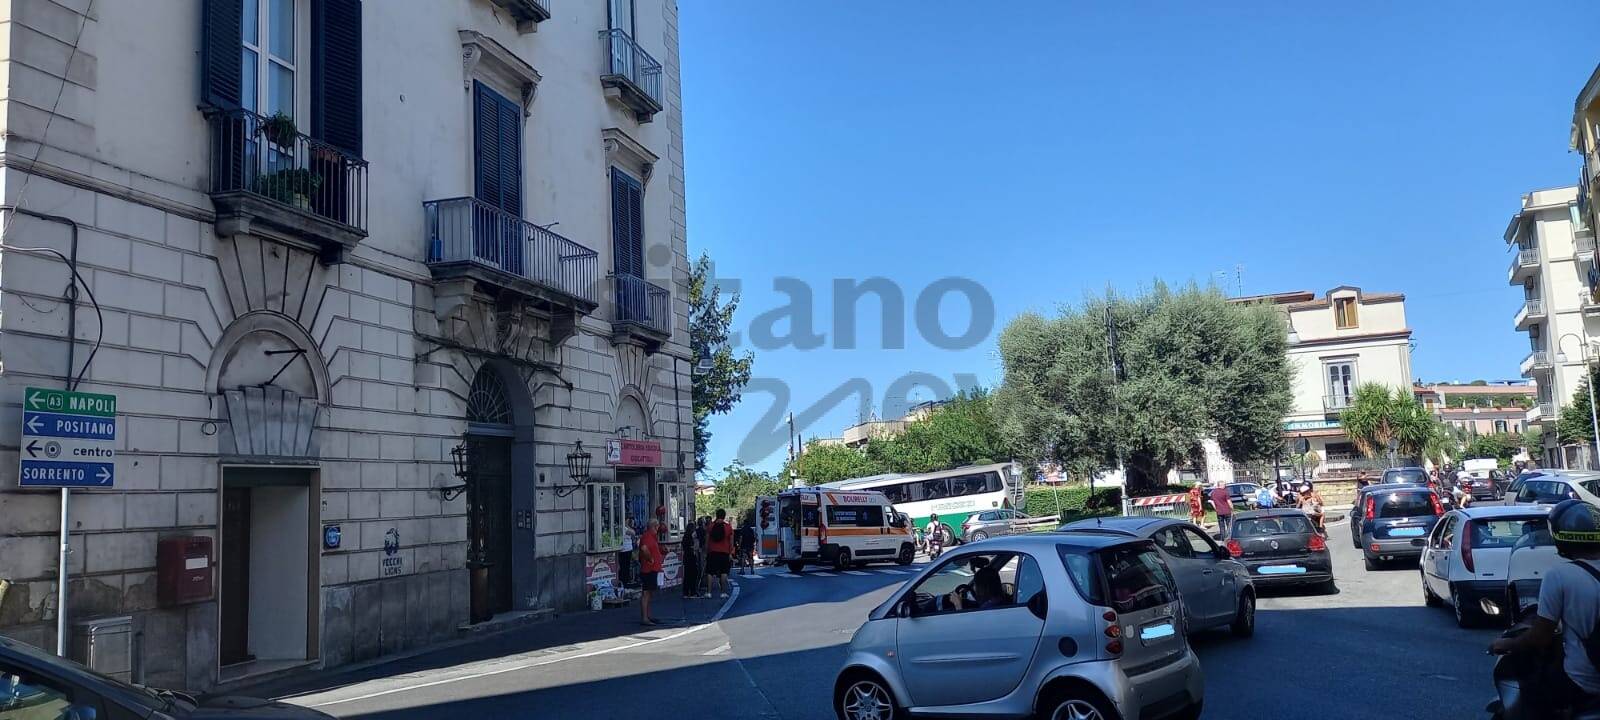 Piano di Sorrento/Sant'Agnello: incidente alla Siesta, coinvolta una moto